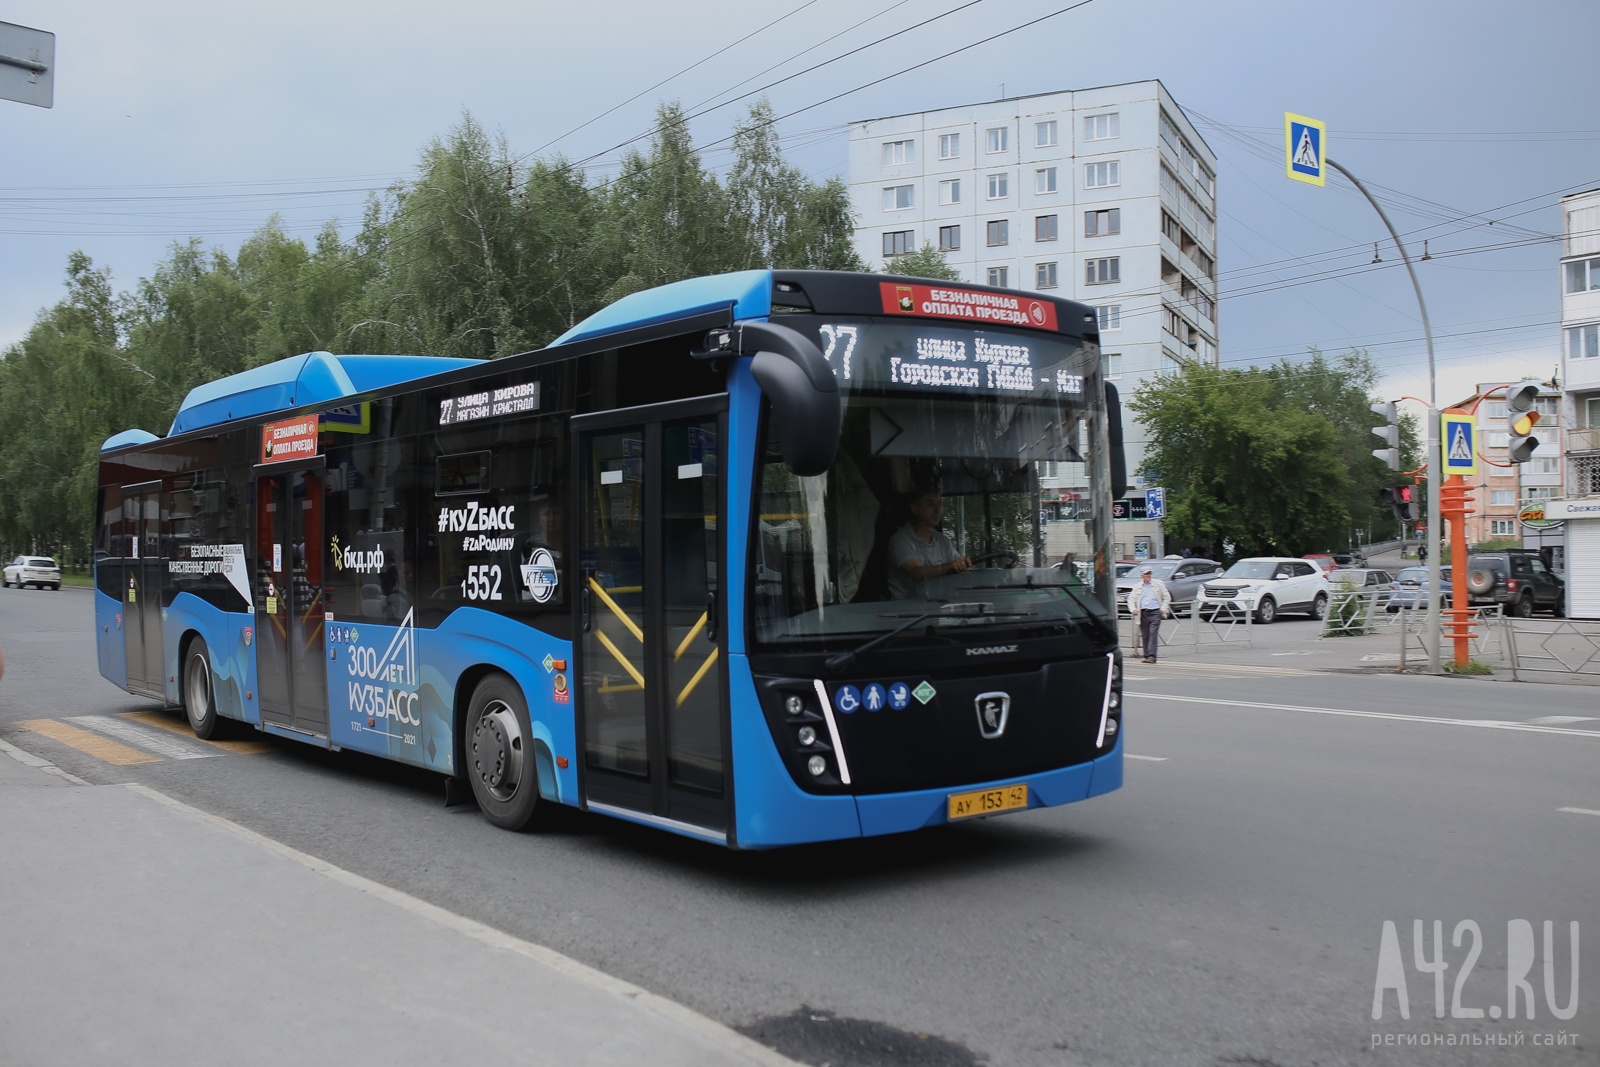 «С ветерком»: кемеровчане обсуждают автобус с щелью в дверях